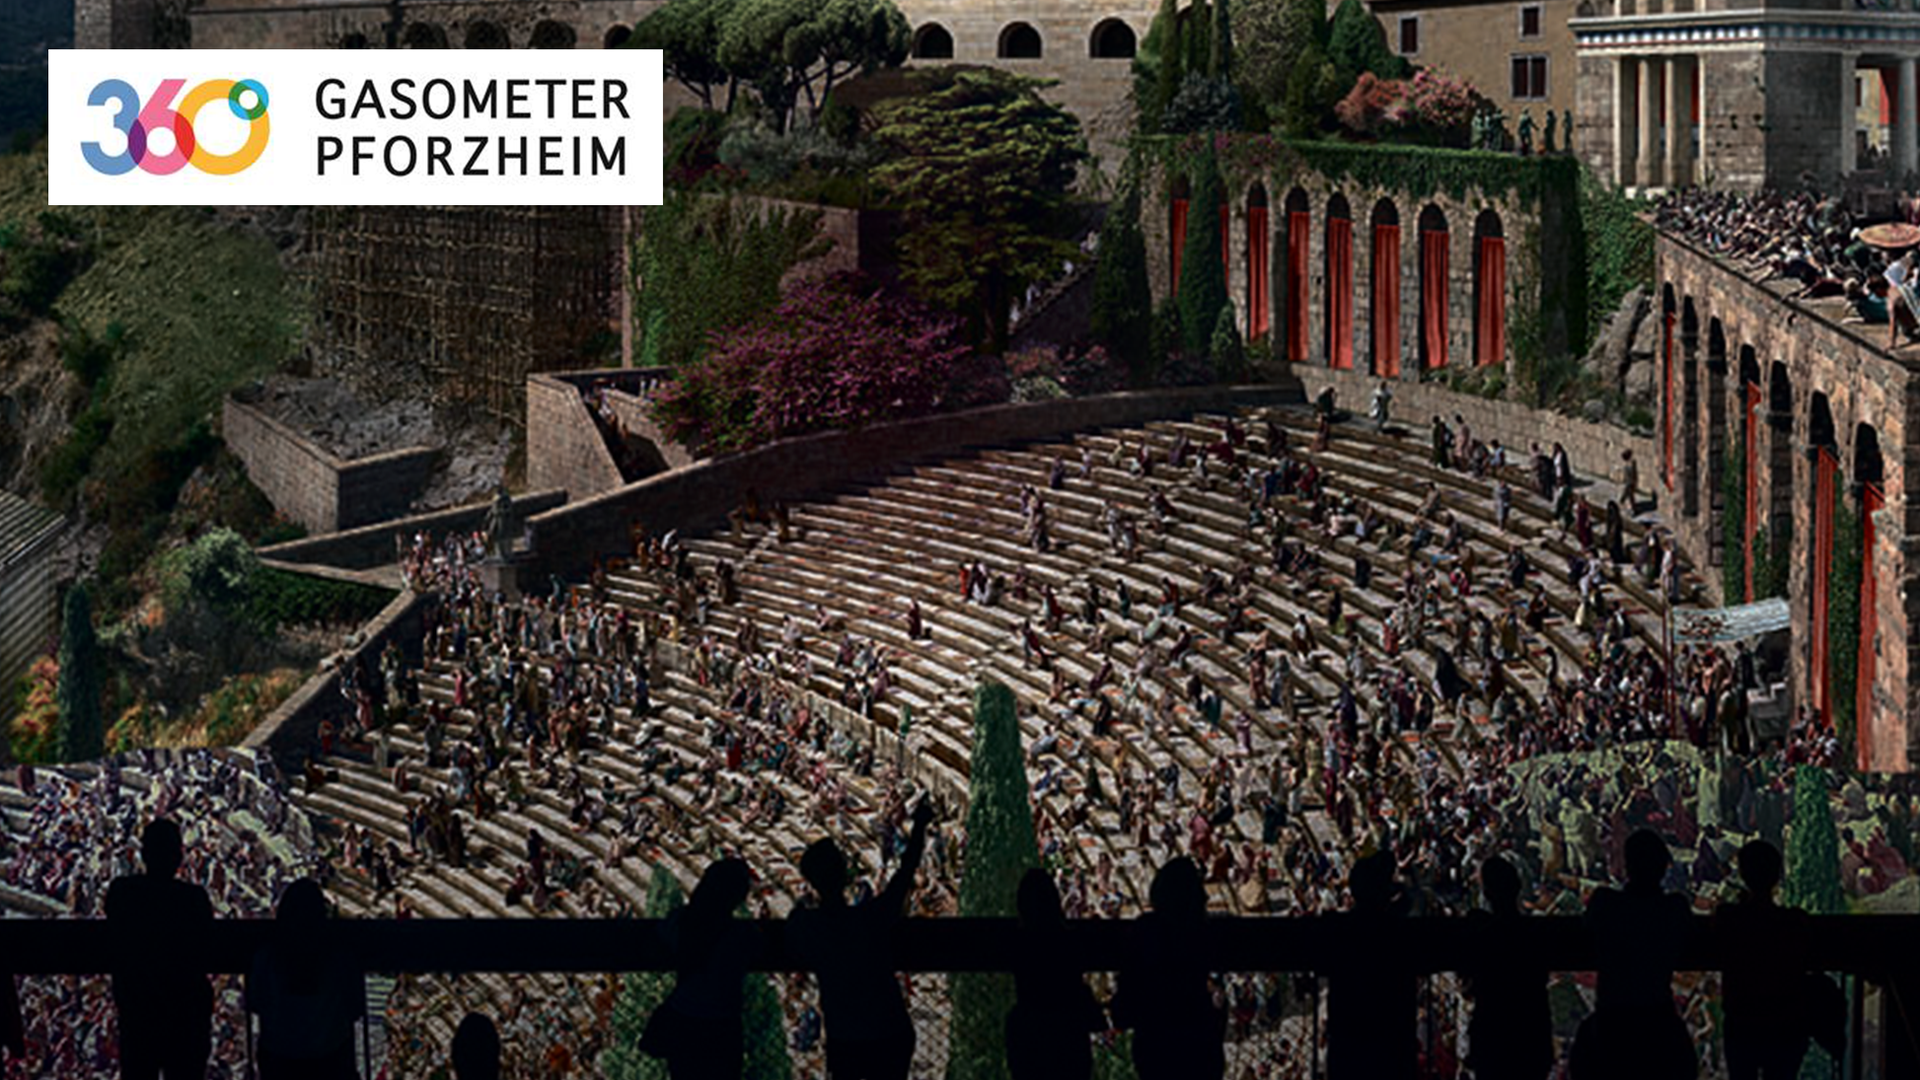  Neues Programm ab 18. März im Gasometer Pforzheim: PERGAMON - Panorama der antiken Metropole.